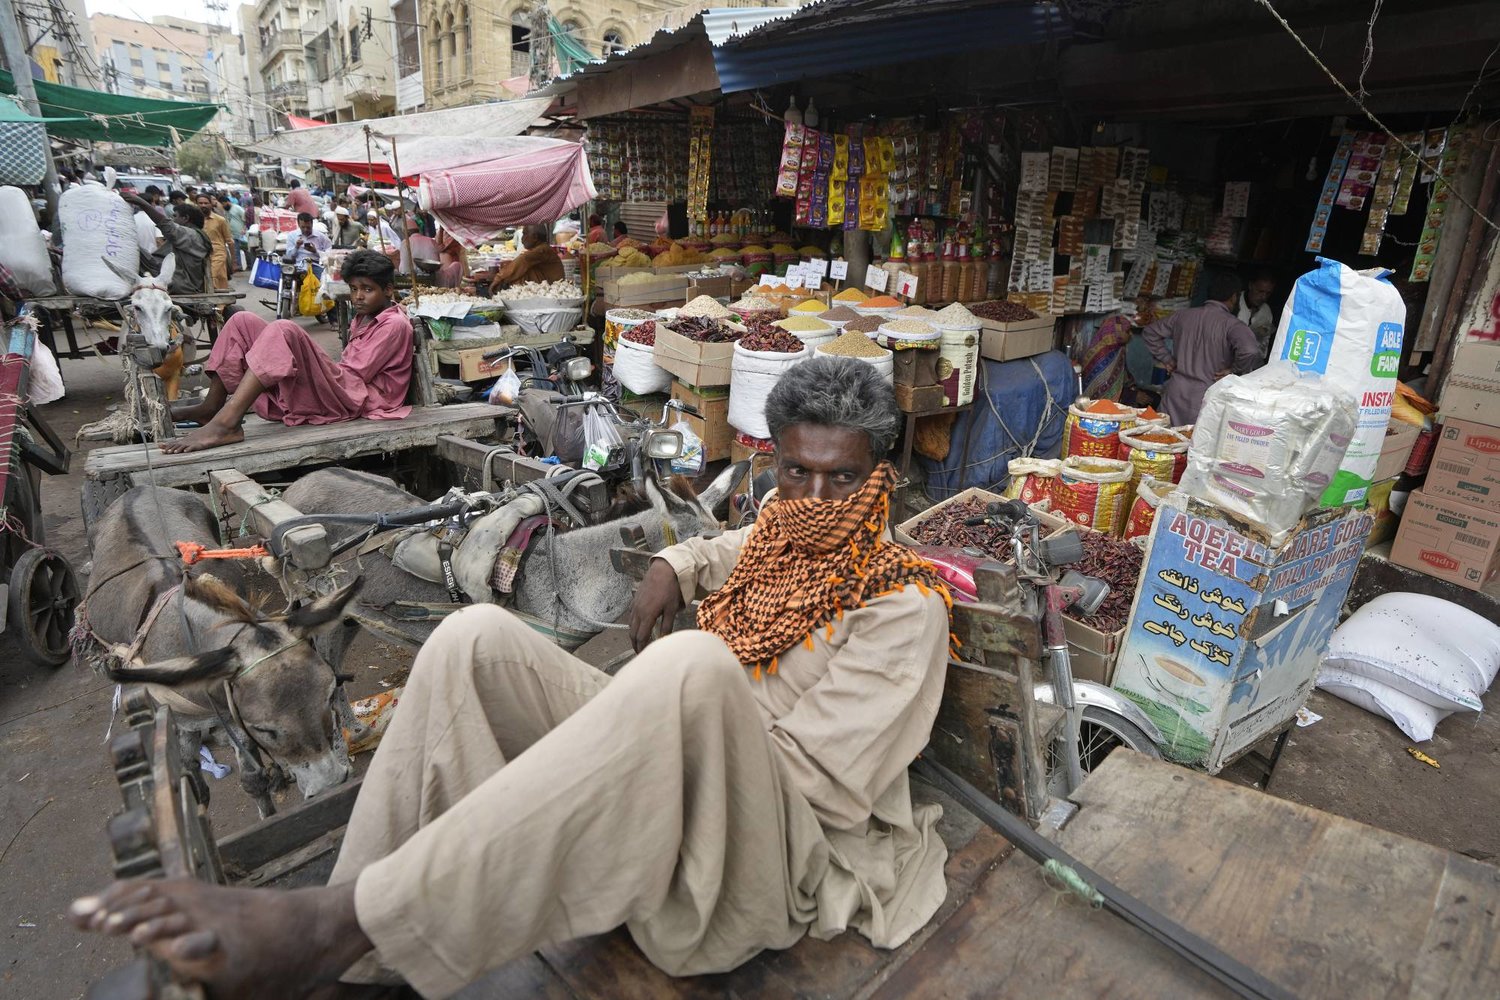 عاملون بالأجرة اليومية ينتظرون من يطلب خدماتهم وسط أحد الأسواق في كراتشي بباكستان... فيما قالت الأمم المتحدة إن 165 مليون شخص سقطوا في براثن الفقر خلال السنوات الأخيرة (أ.ب)